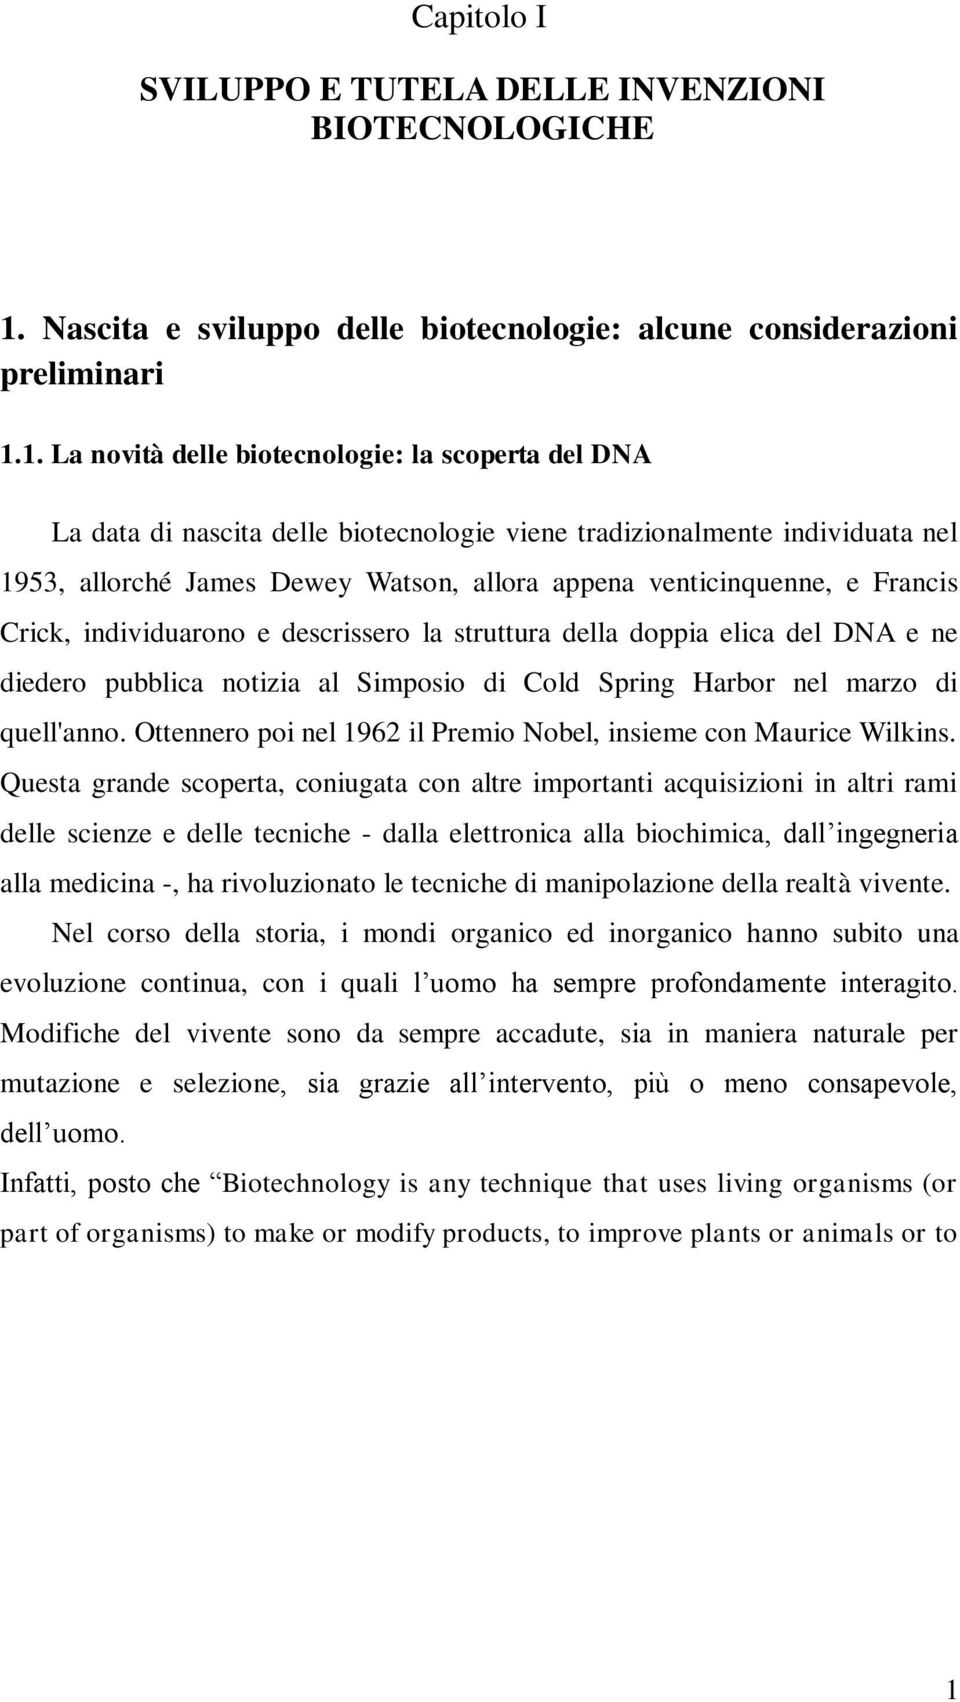 1. La novità delle biotecnologie: la scoperta del DNA La data di nascita delle biotecnologie viene tradizionalmente individuata nel 1953, allorché James Dewey Watson, allora appena venticinquenne, e